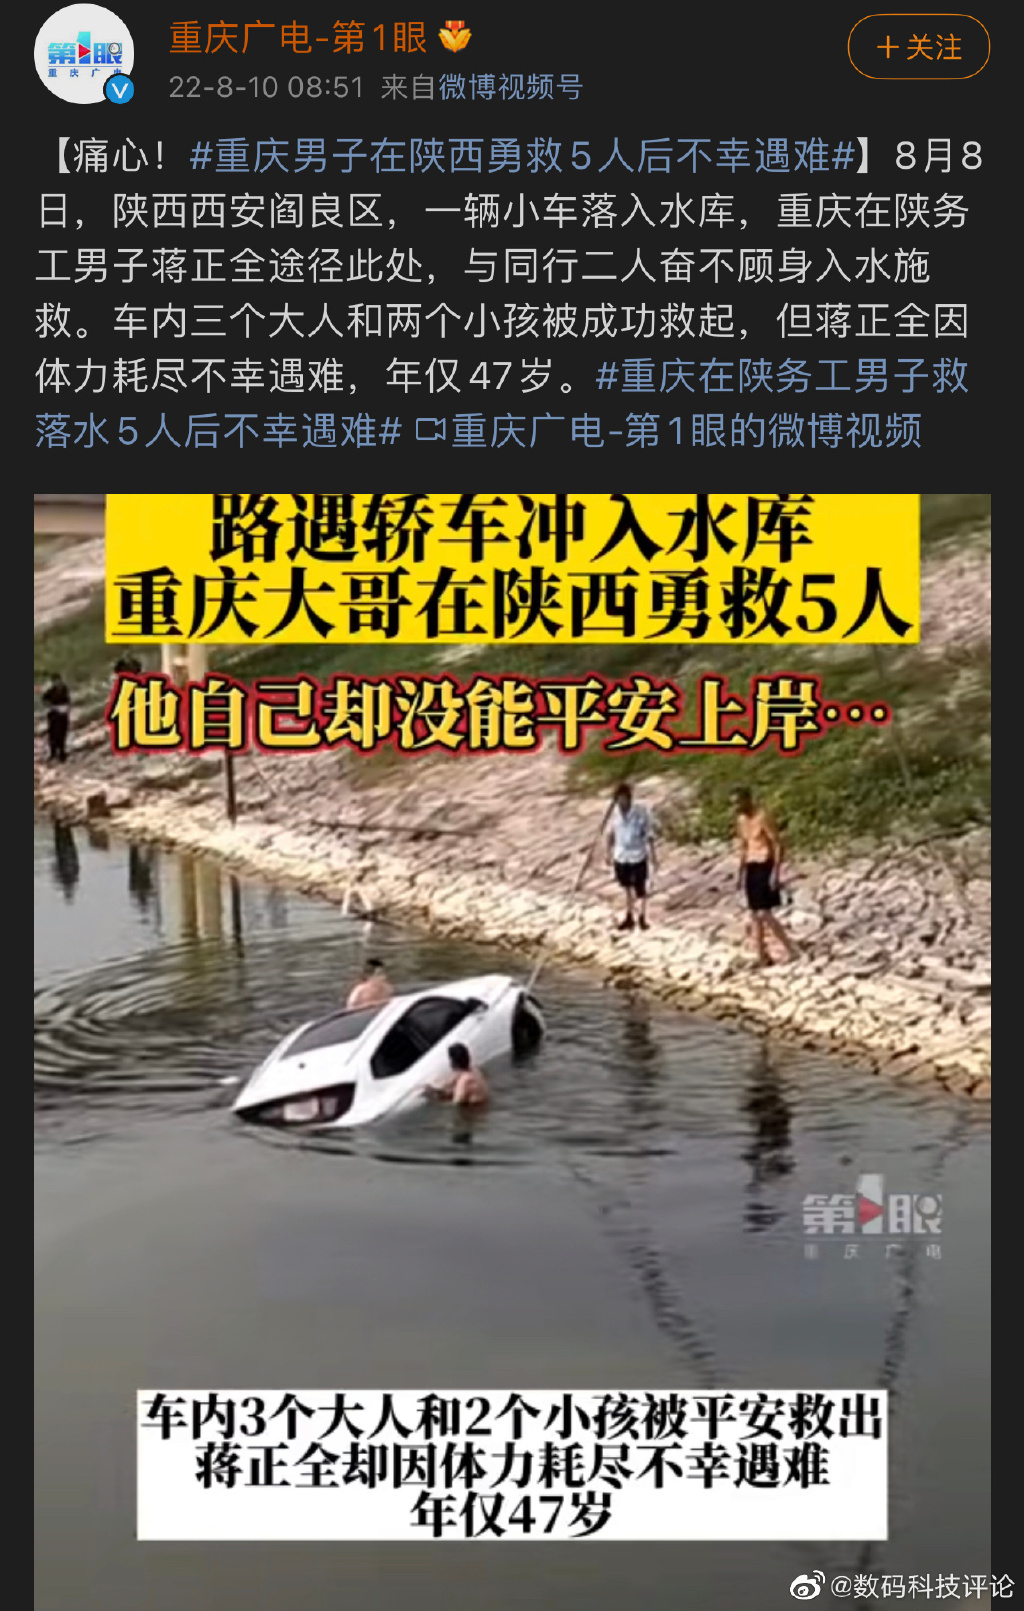 重庆男子在陕西勇救5人后不幸遇难是真的吗 重庆男子在陕西勇救5人后不幸遇难视频